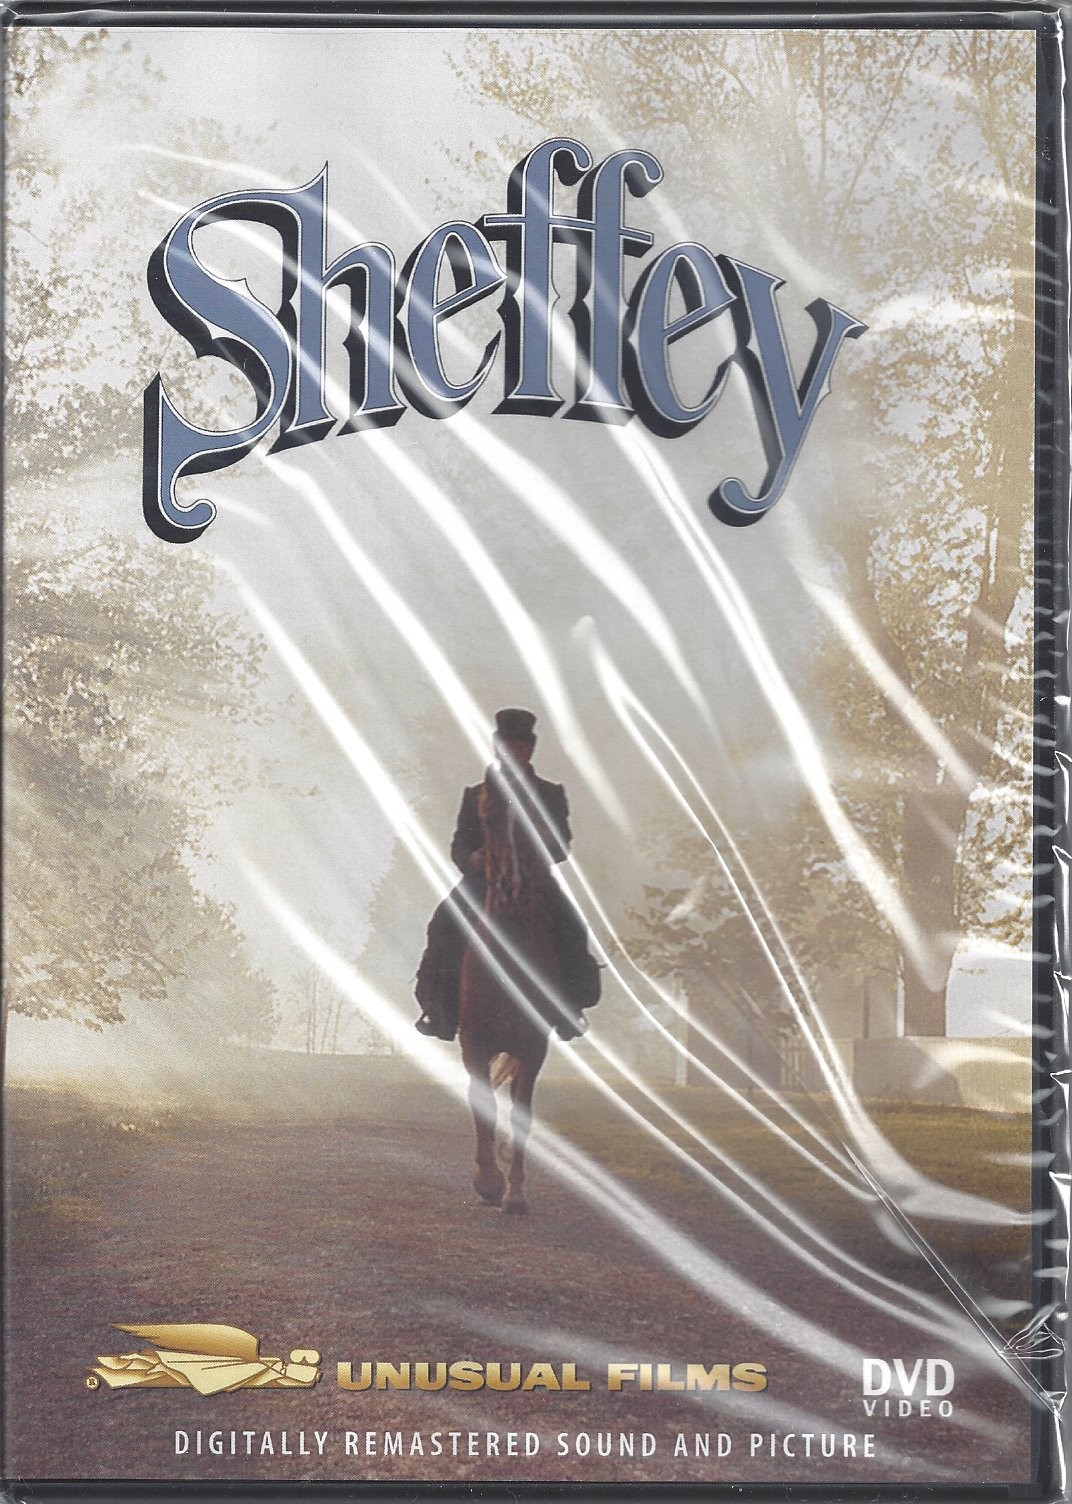 Sheffey  (2003)  Front